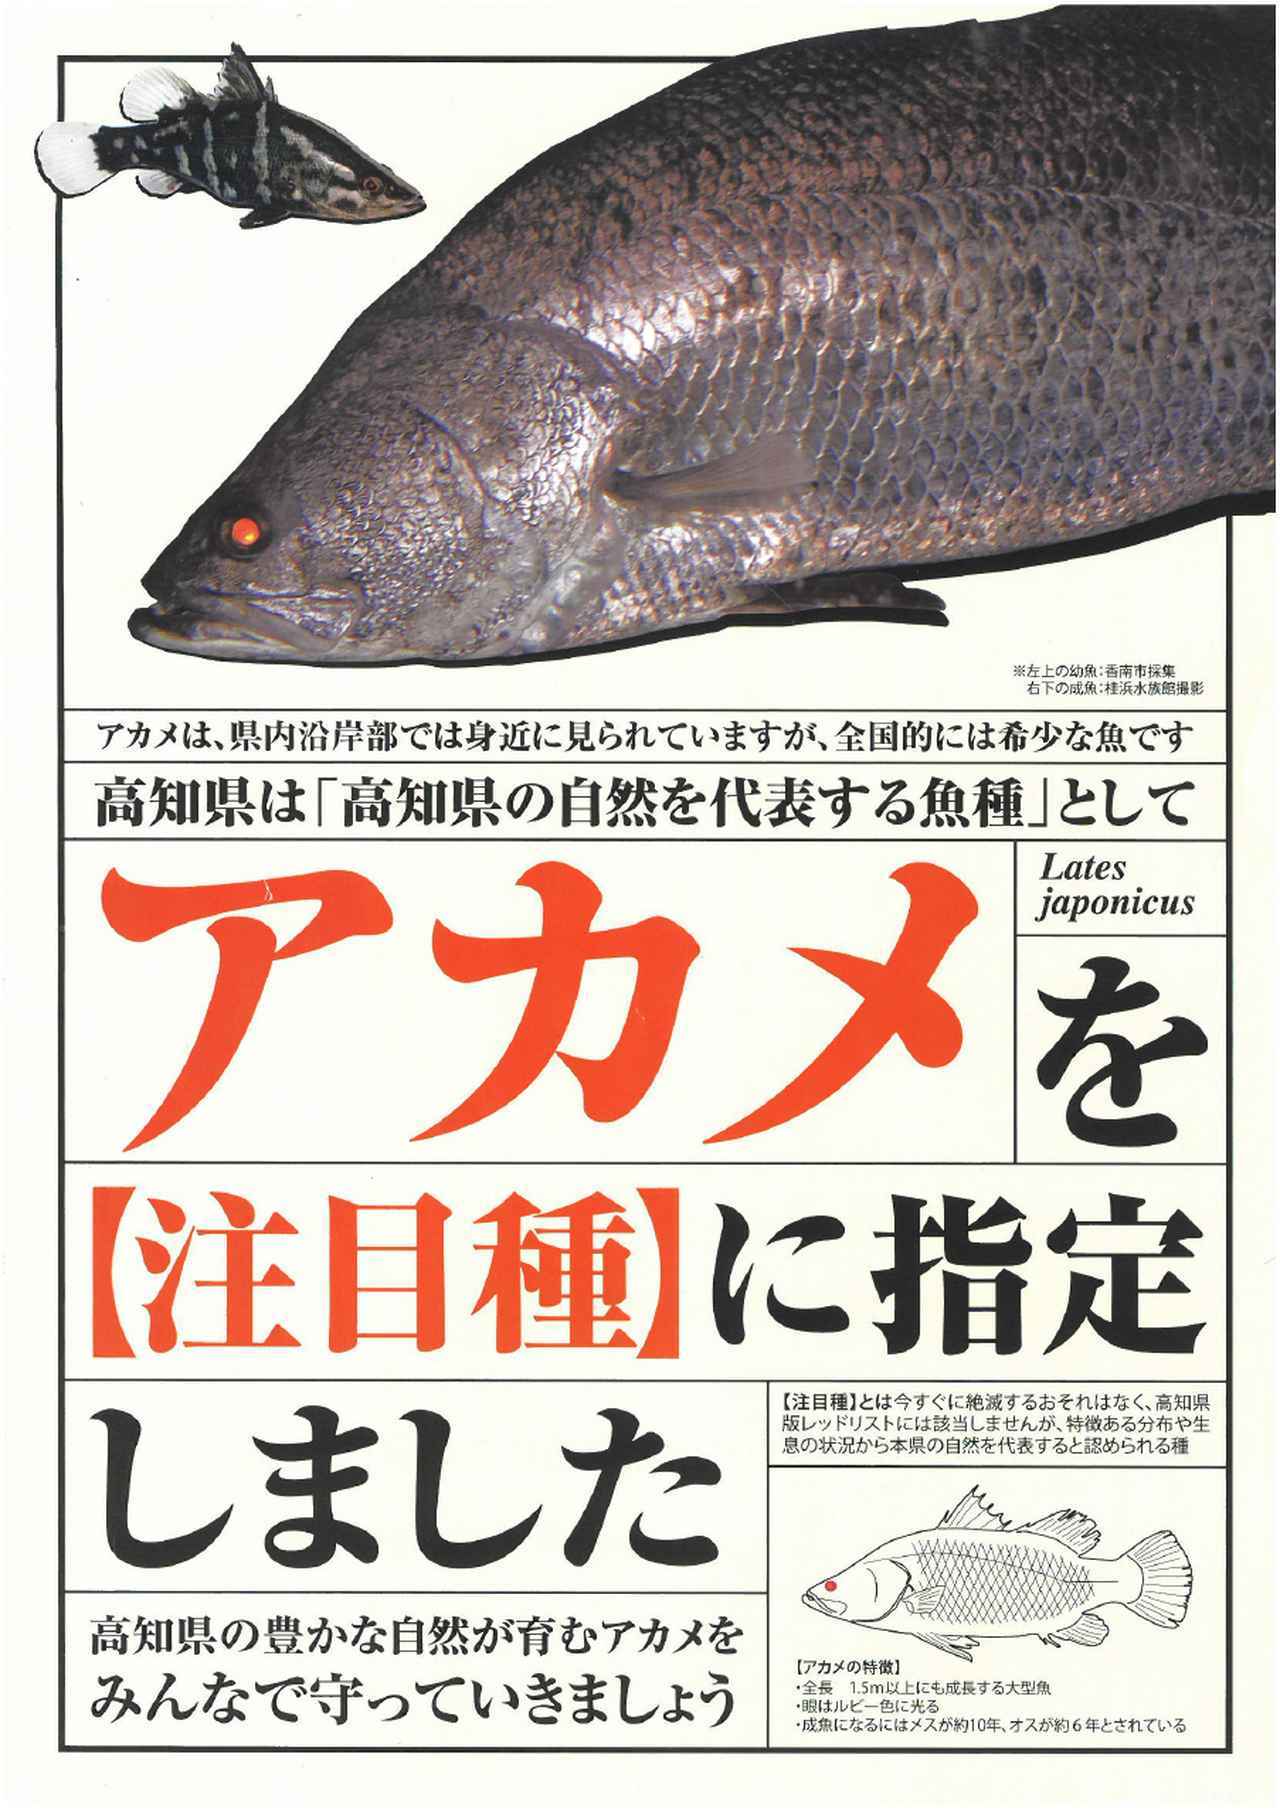 幻の怪魚 アカメを高知県が 注目種 に指定 釣りの対象魚として官民一体で守る話 ルアマガ